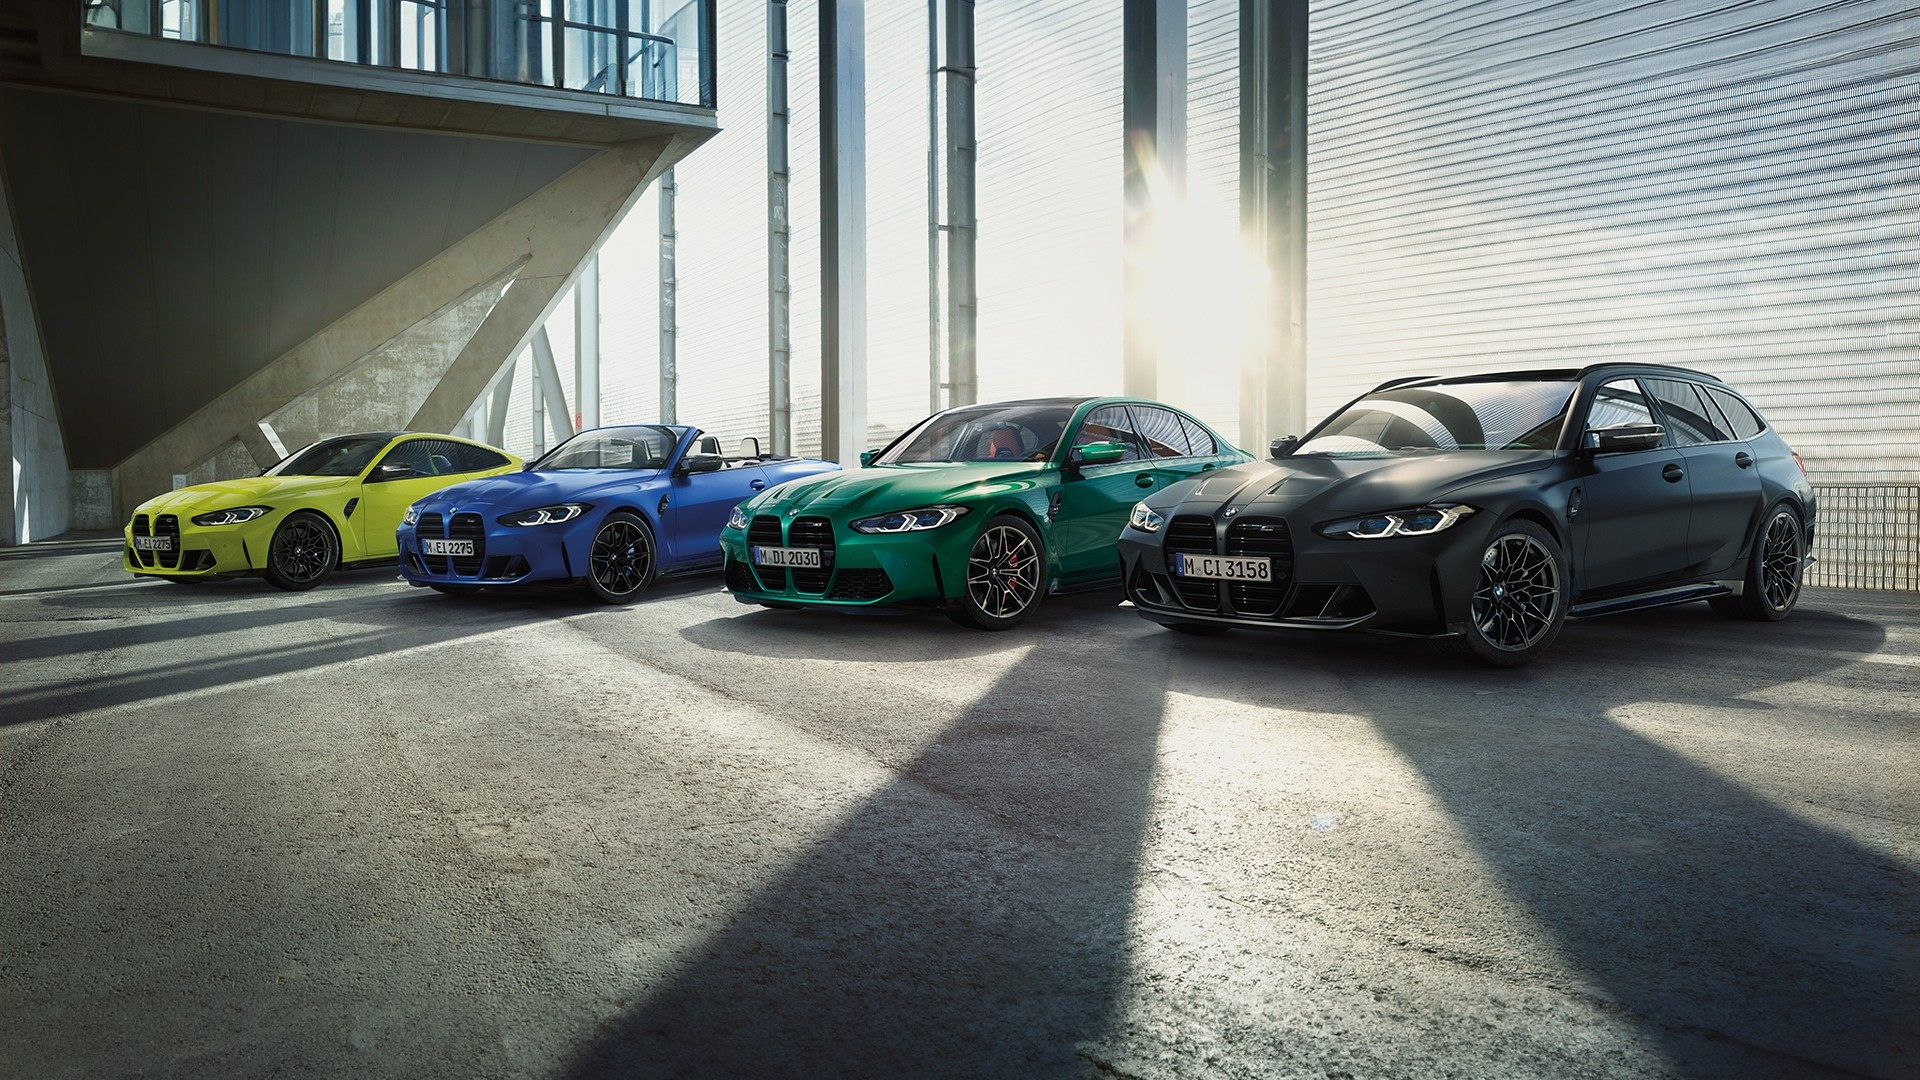 BMW M GmbH continúa creciendo: más de 200,000 vehículos entregados en un año por primera vez